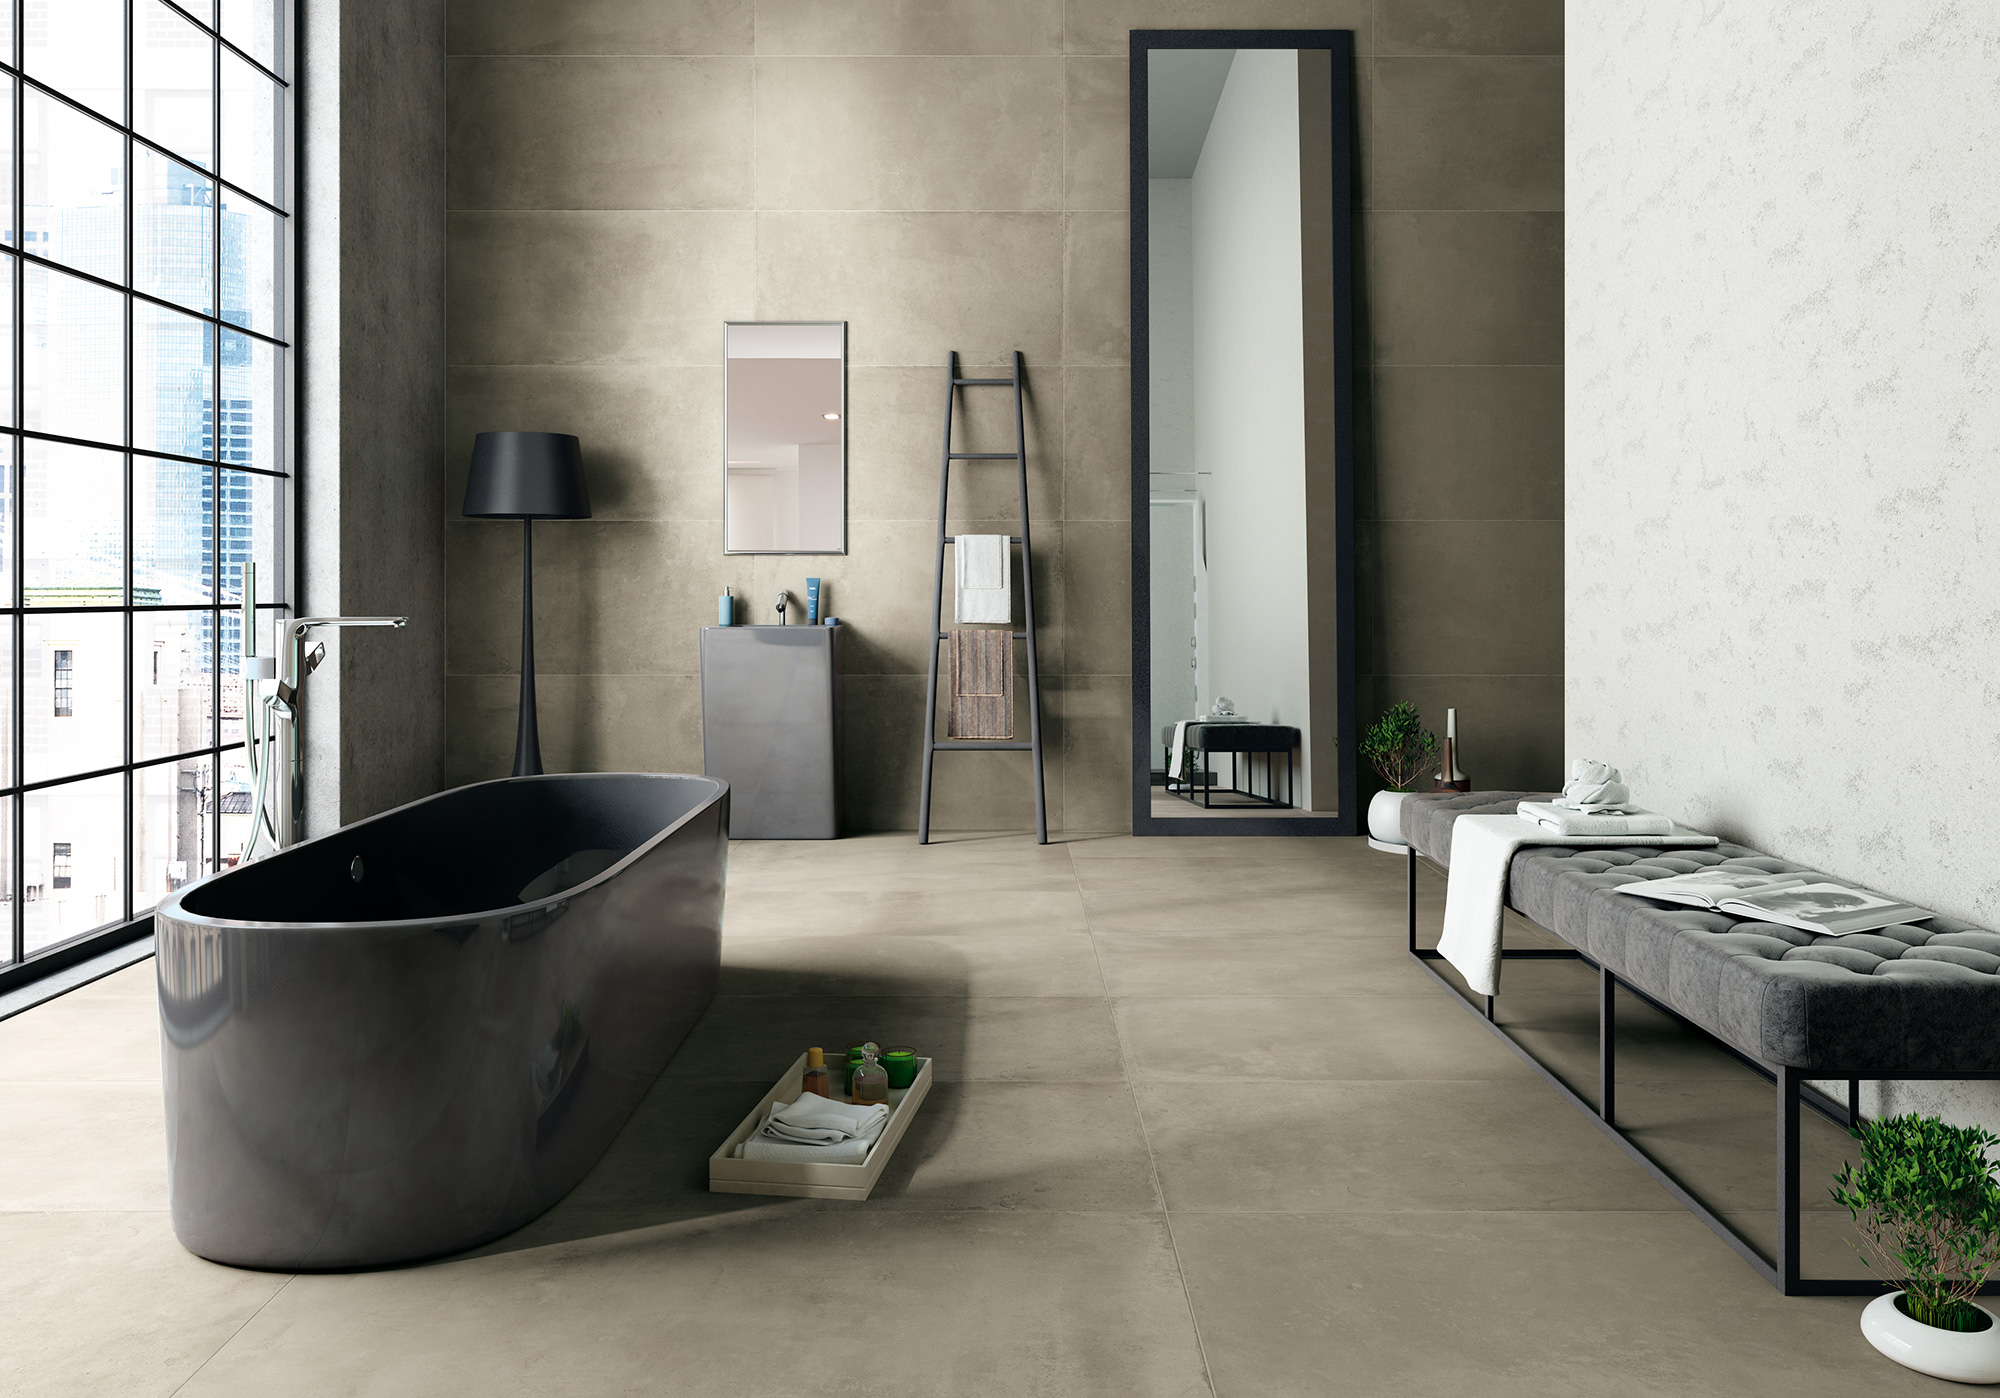 Badezimmer puristisch: sehr schlicht, Schwarz/Weiß/Grau Töne